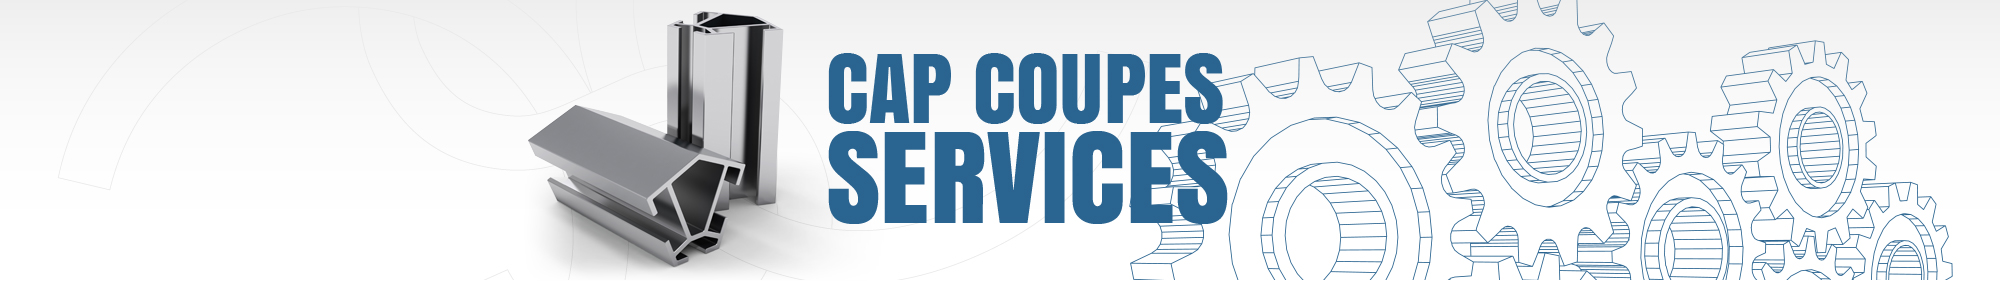 Cap Coupes Services